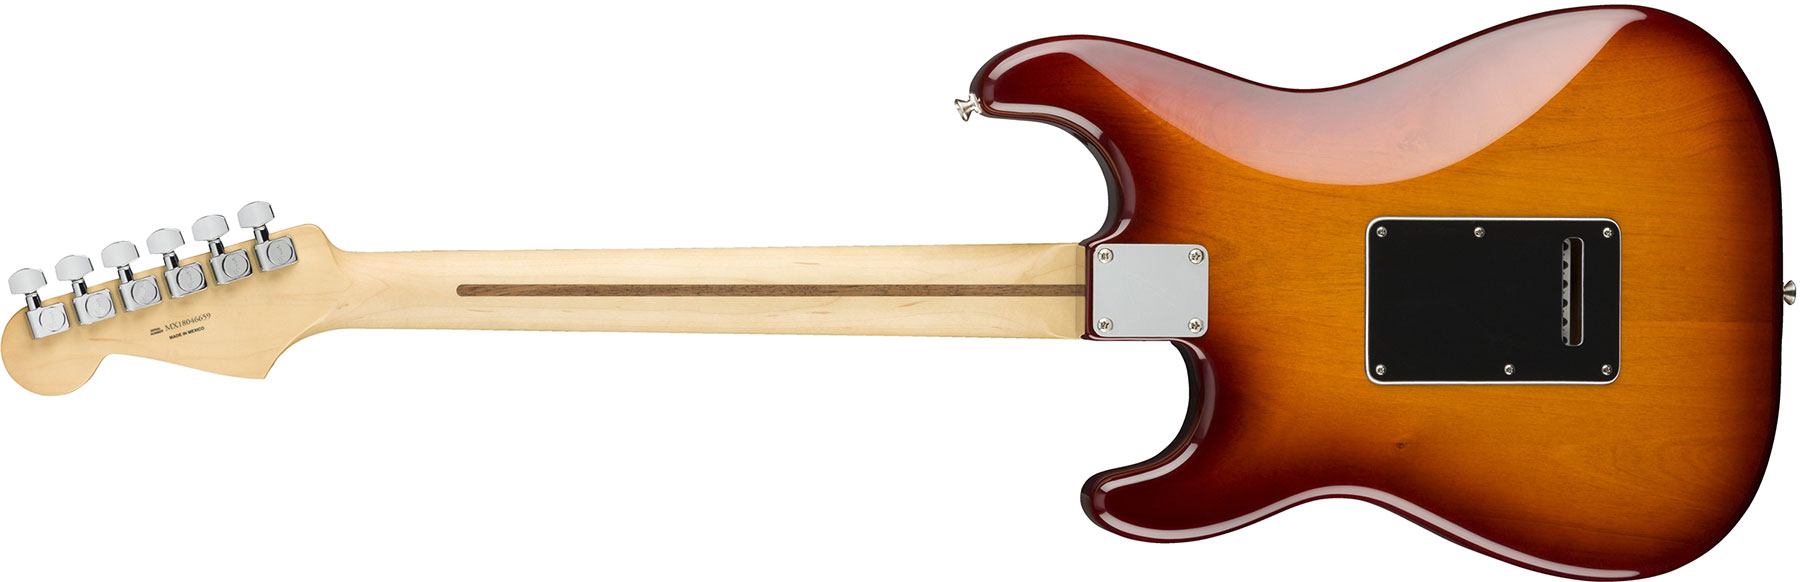 Fender Strat Player Mex Hsh Pf - Tobacco Burst - Elektrische gitaar in Str-vorm - Variation 1